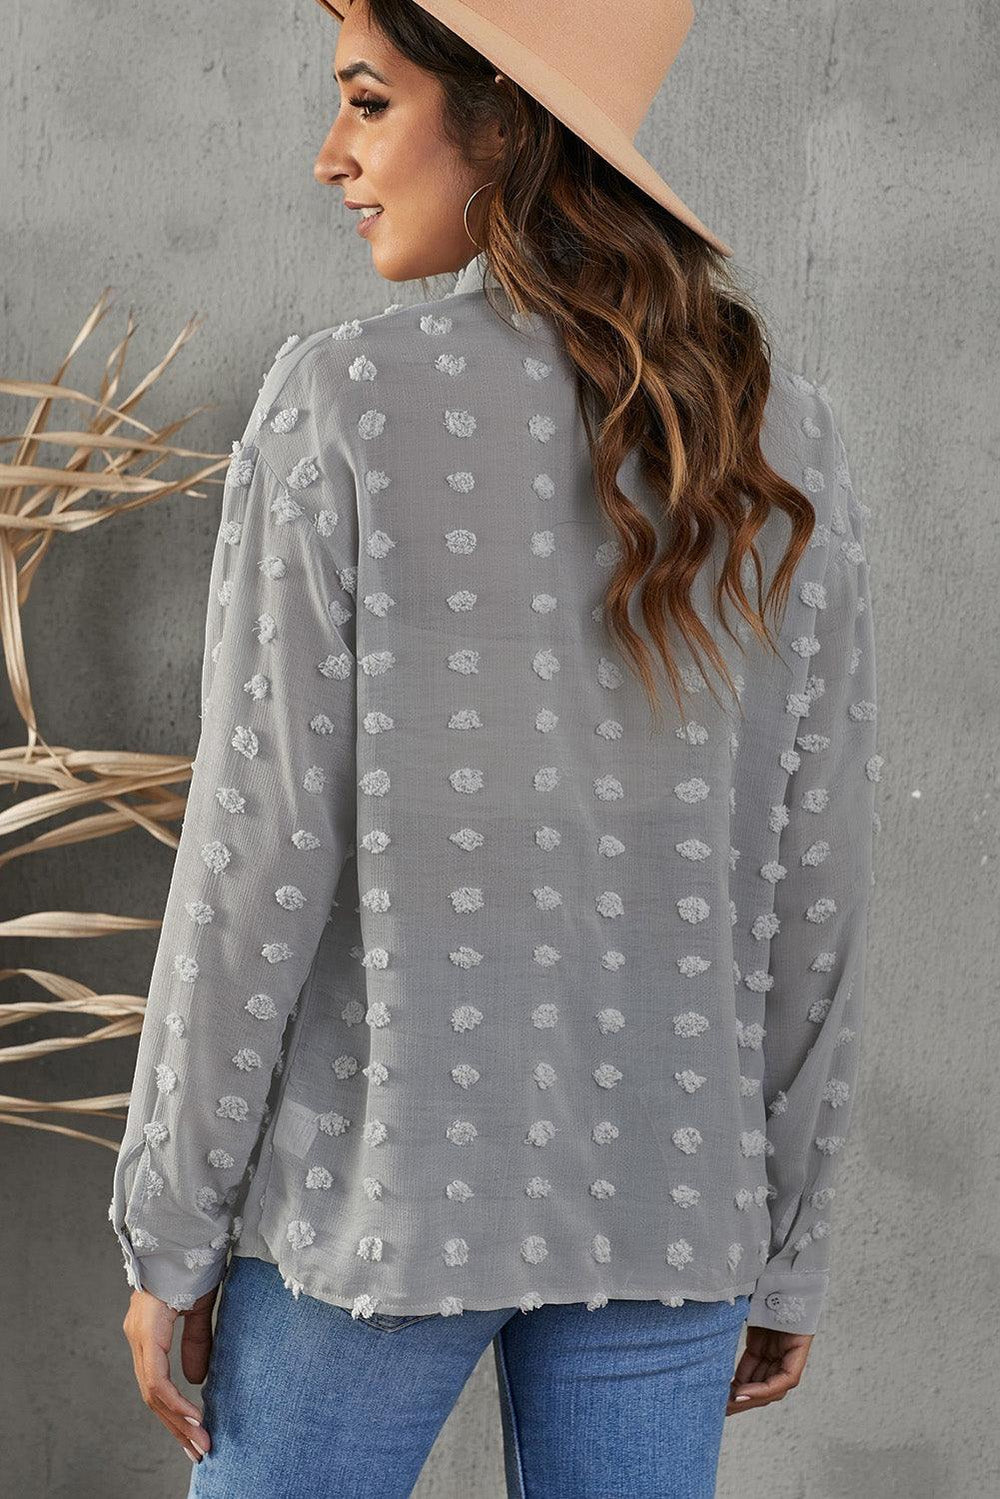 Swiss Dot Button-Up Long Sleeve Shirt - BELLATRENDZ